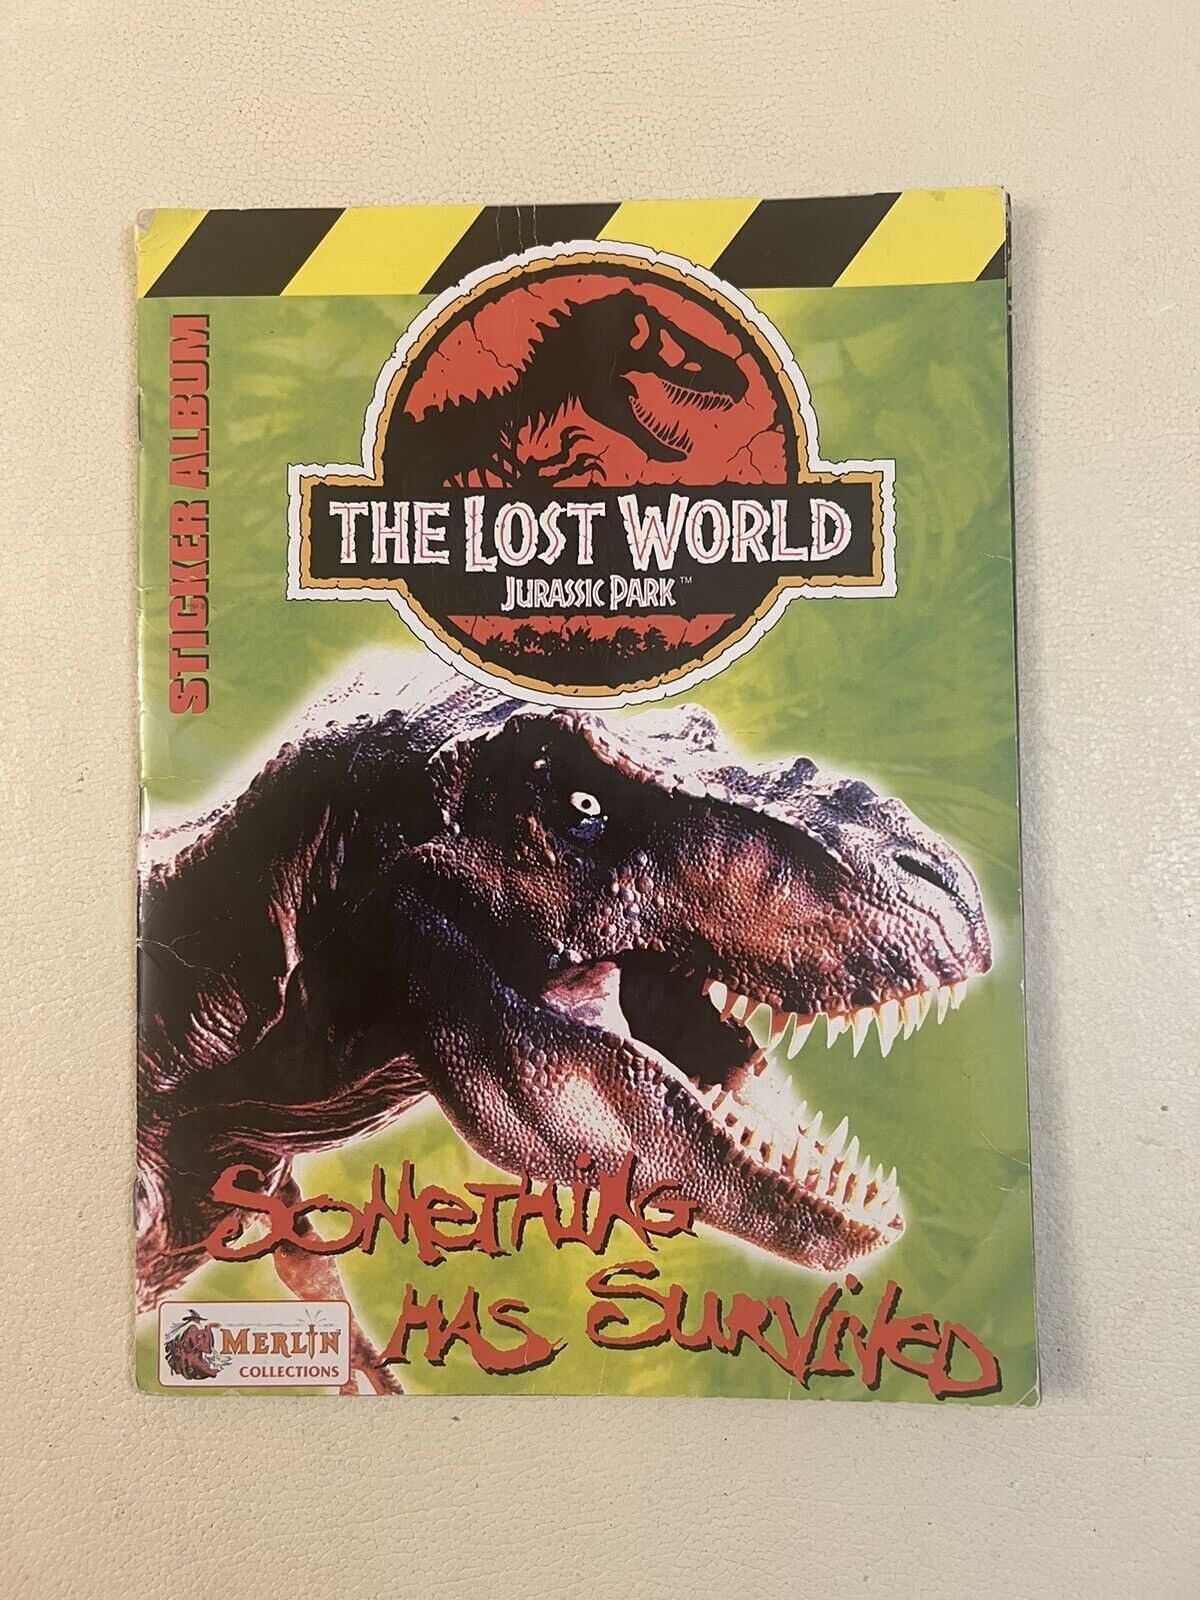 Cromos Merlin Jurassic Park Lost World